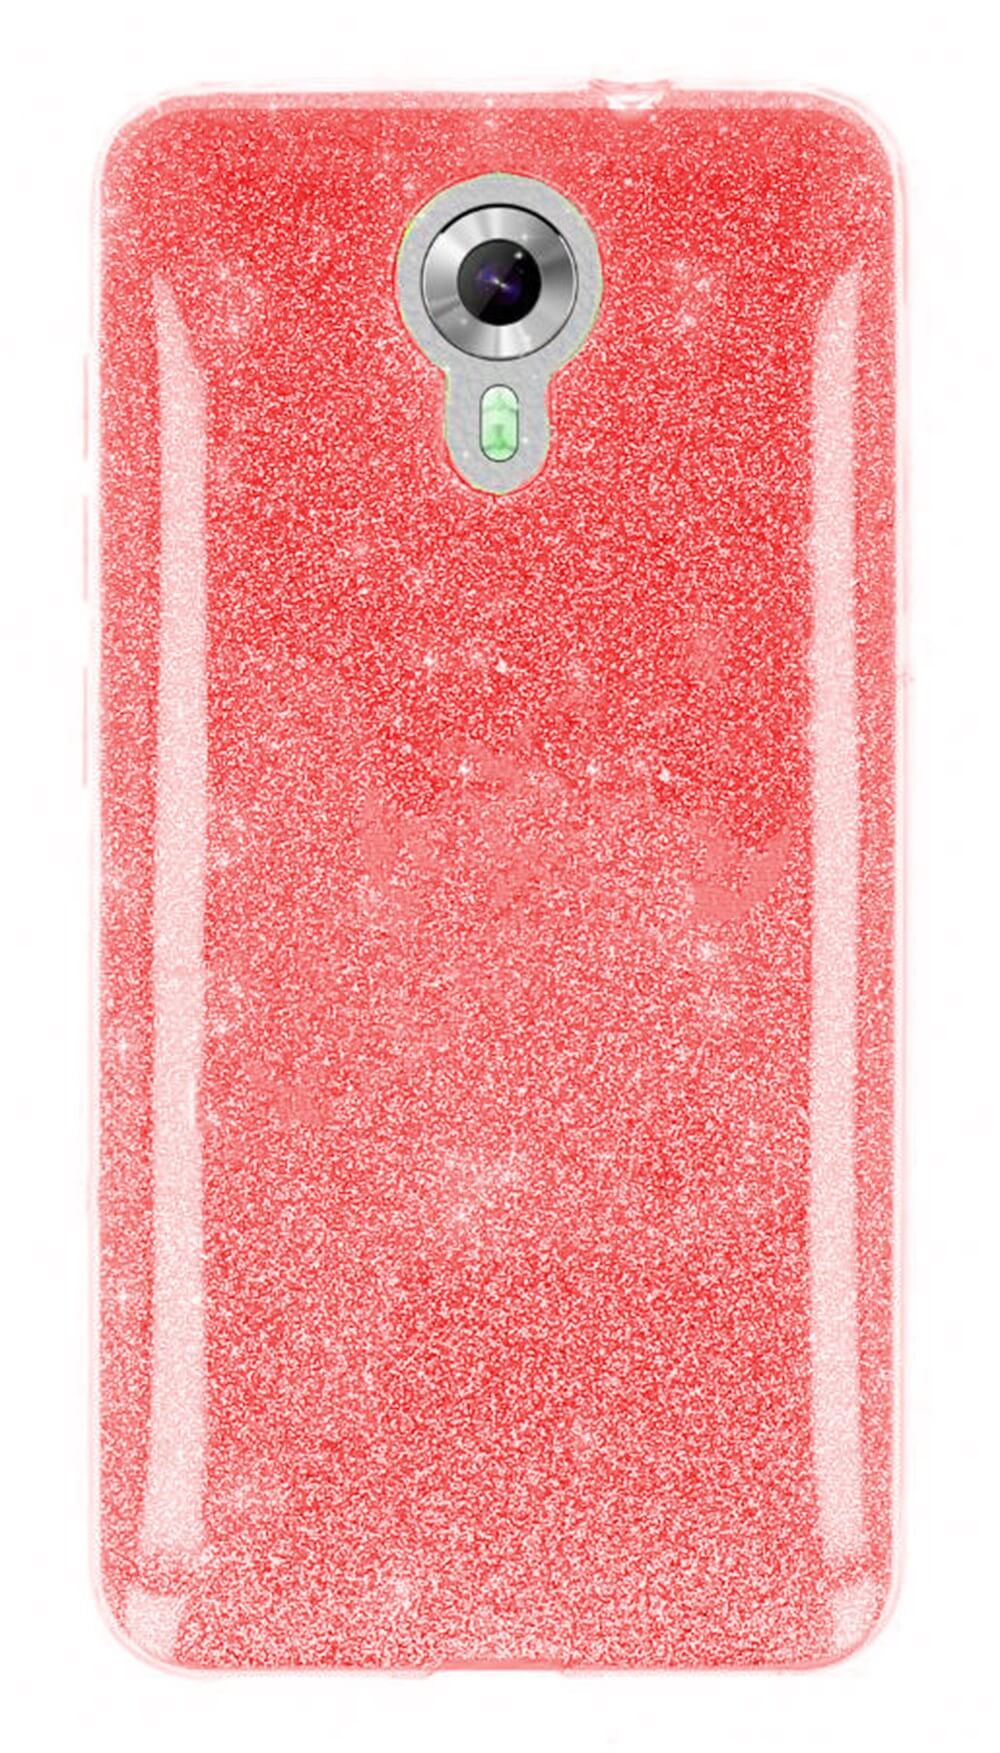 General Mobile Android One 4G Parlak Rosy Kırmızı Simli Silikon Kılıf |  Ücretsiz Kargo